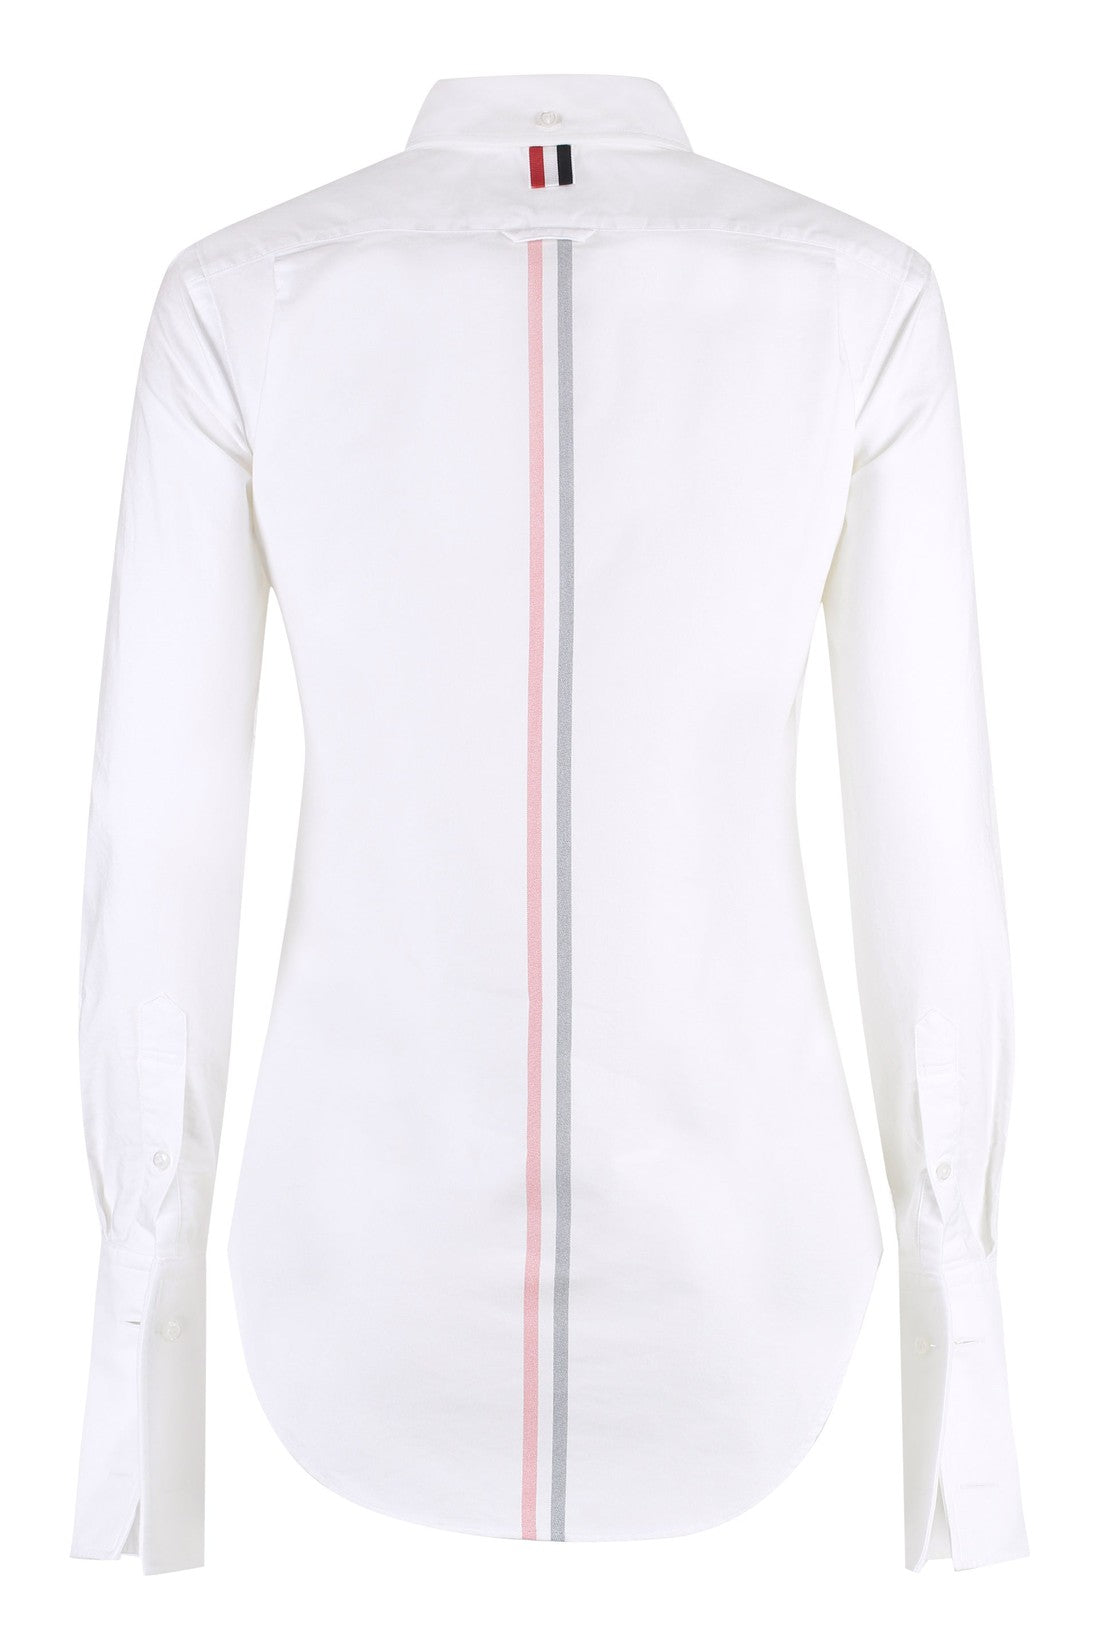 Thom Browne-OUTLET-SALE-Button-down collar cotton shirt-ARCHIVIST